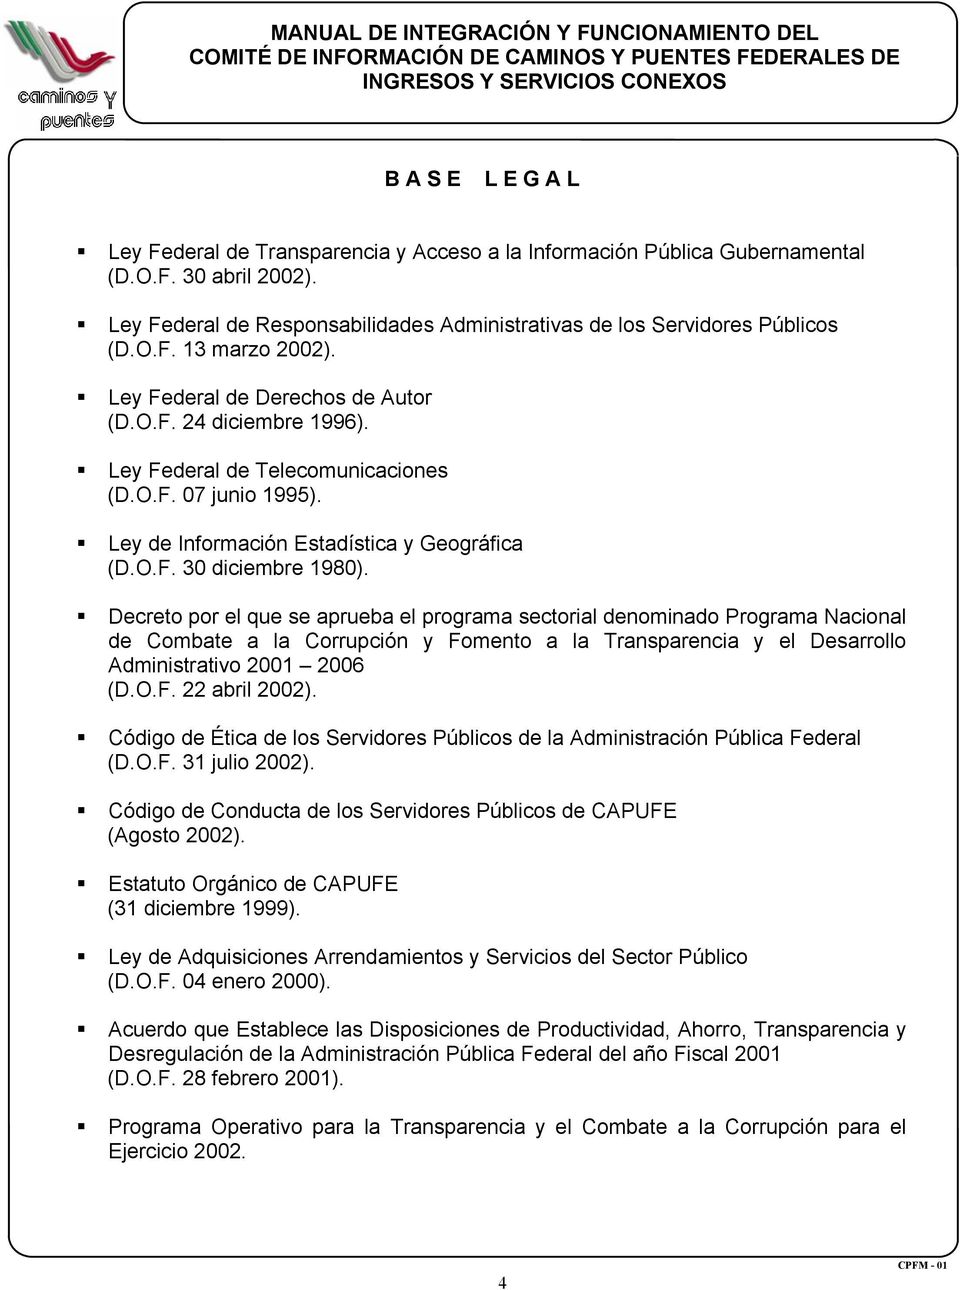 Decreto por el que se aprueba el programa sectorial denominado Programa Nacional de Combate a la Corrupción y Fomento a la Transparencia y el Desarrollo Administrativo 2001 2006 (D.O.F. 22 abril 2002).